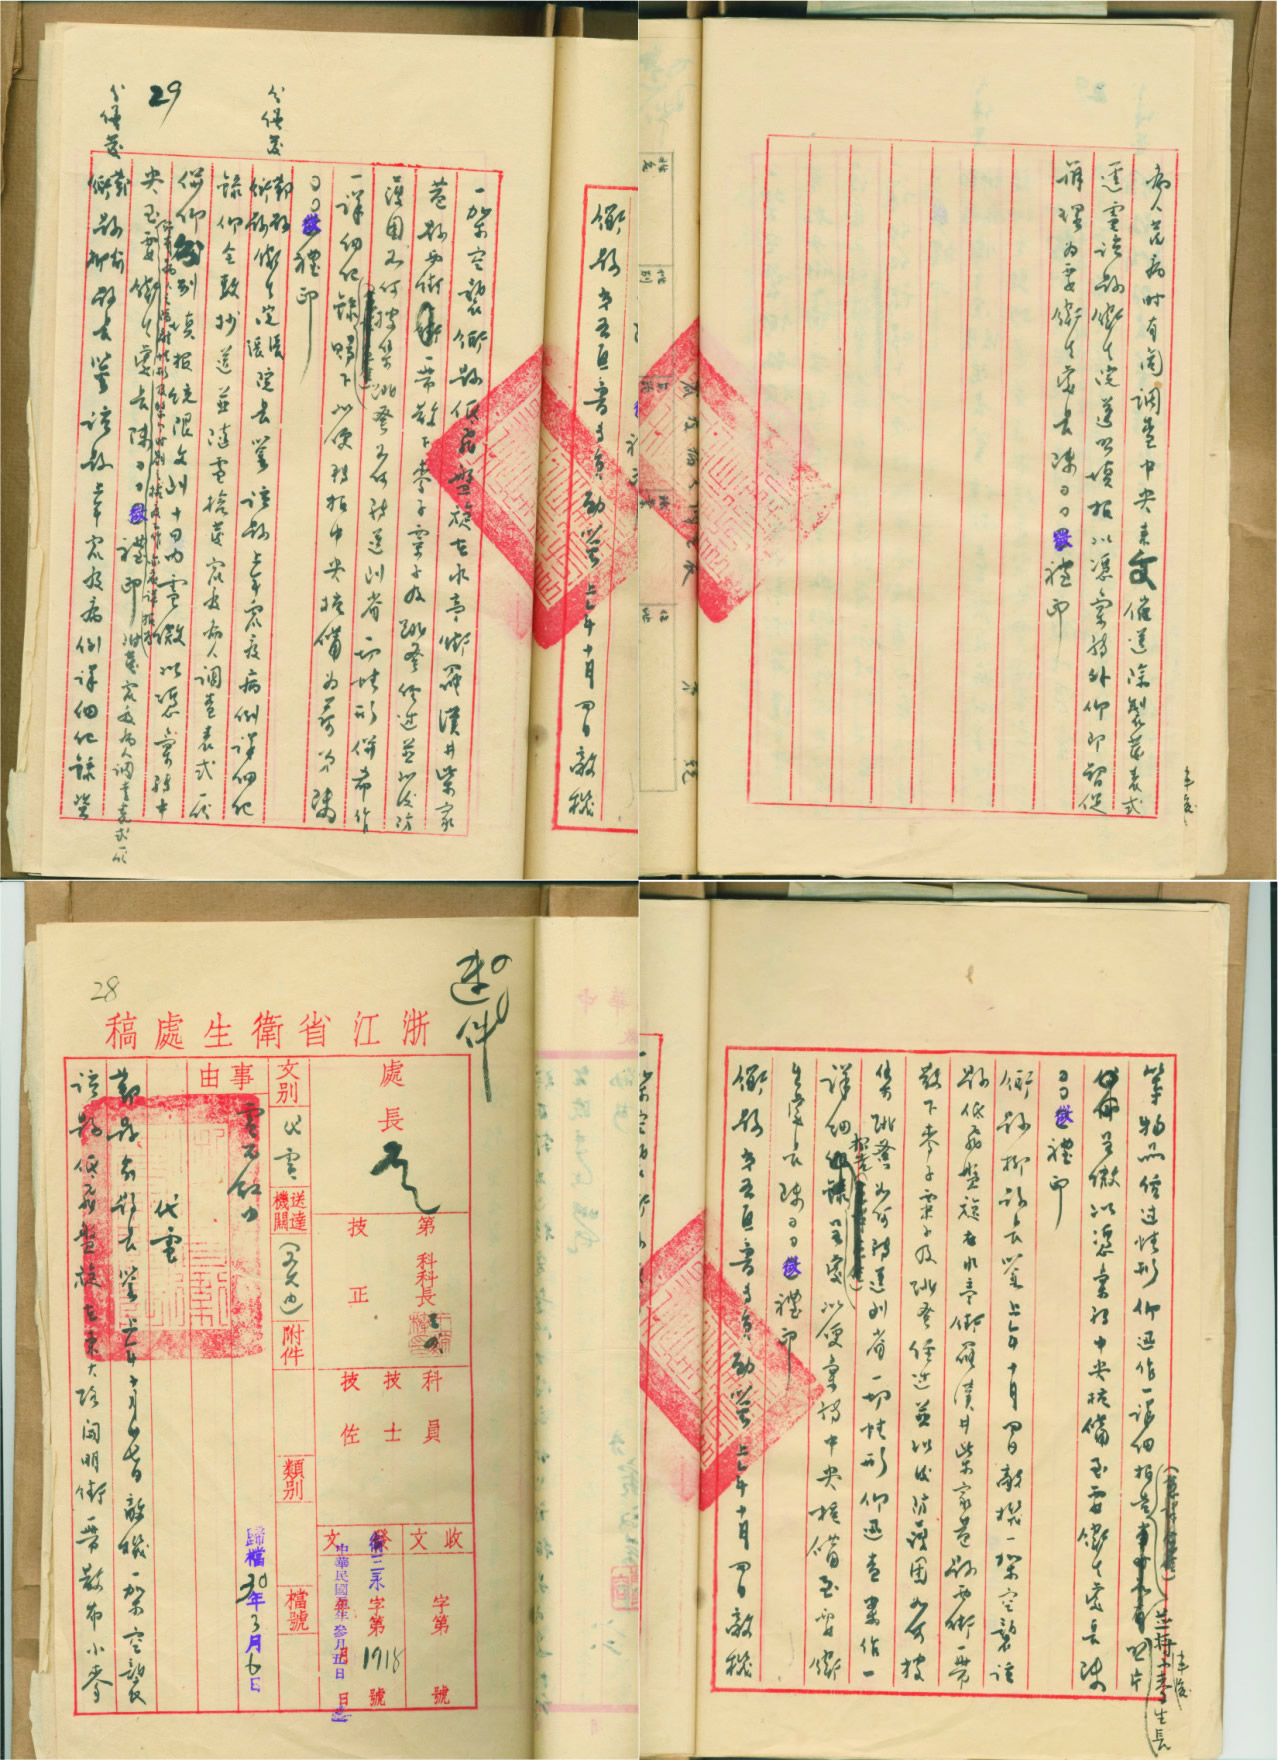 1941年3月5日《浙江省政府卫生处致鄞县、衢县、第五区专员等电》